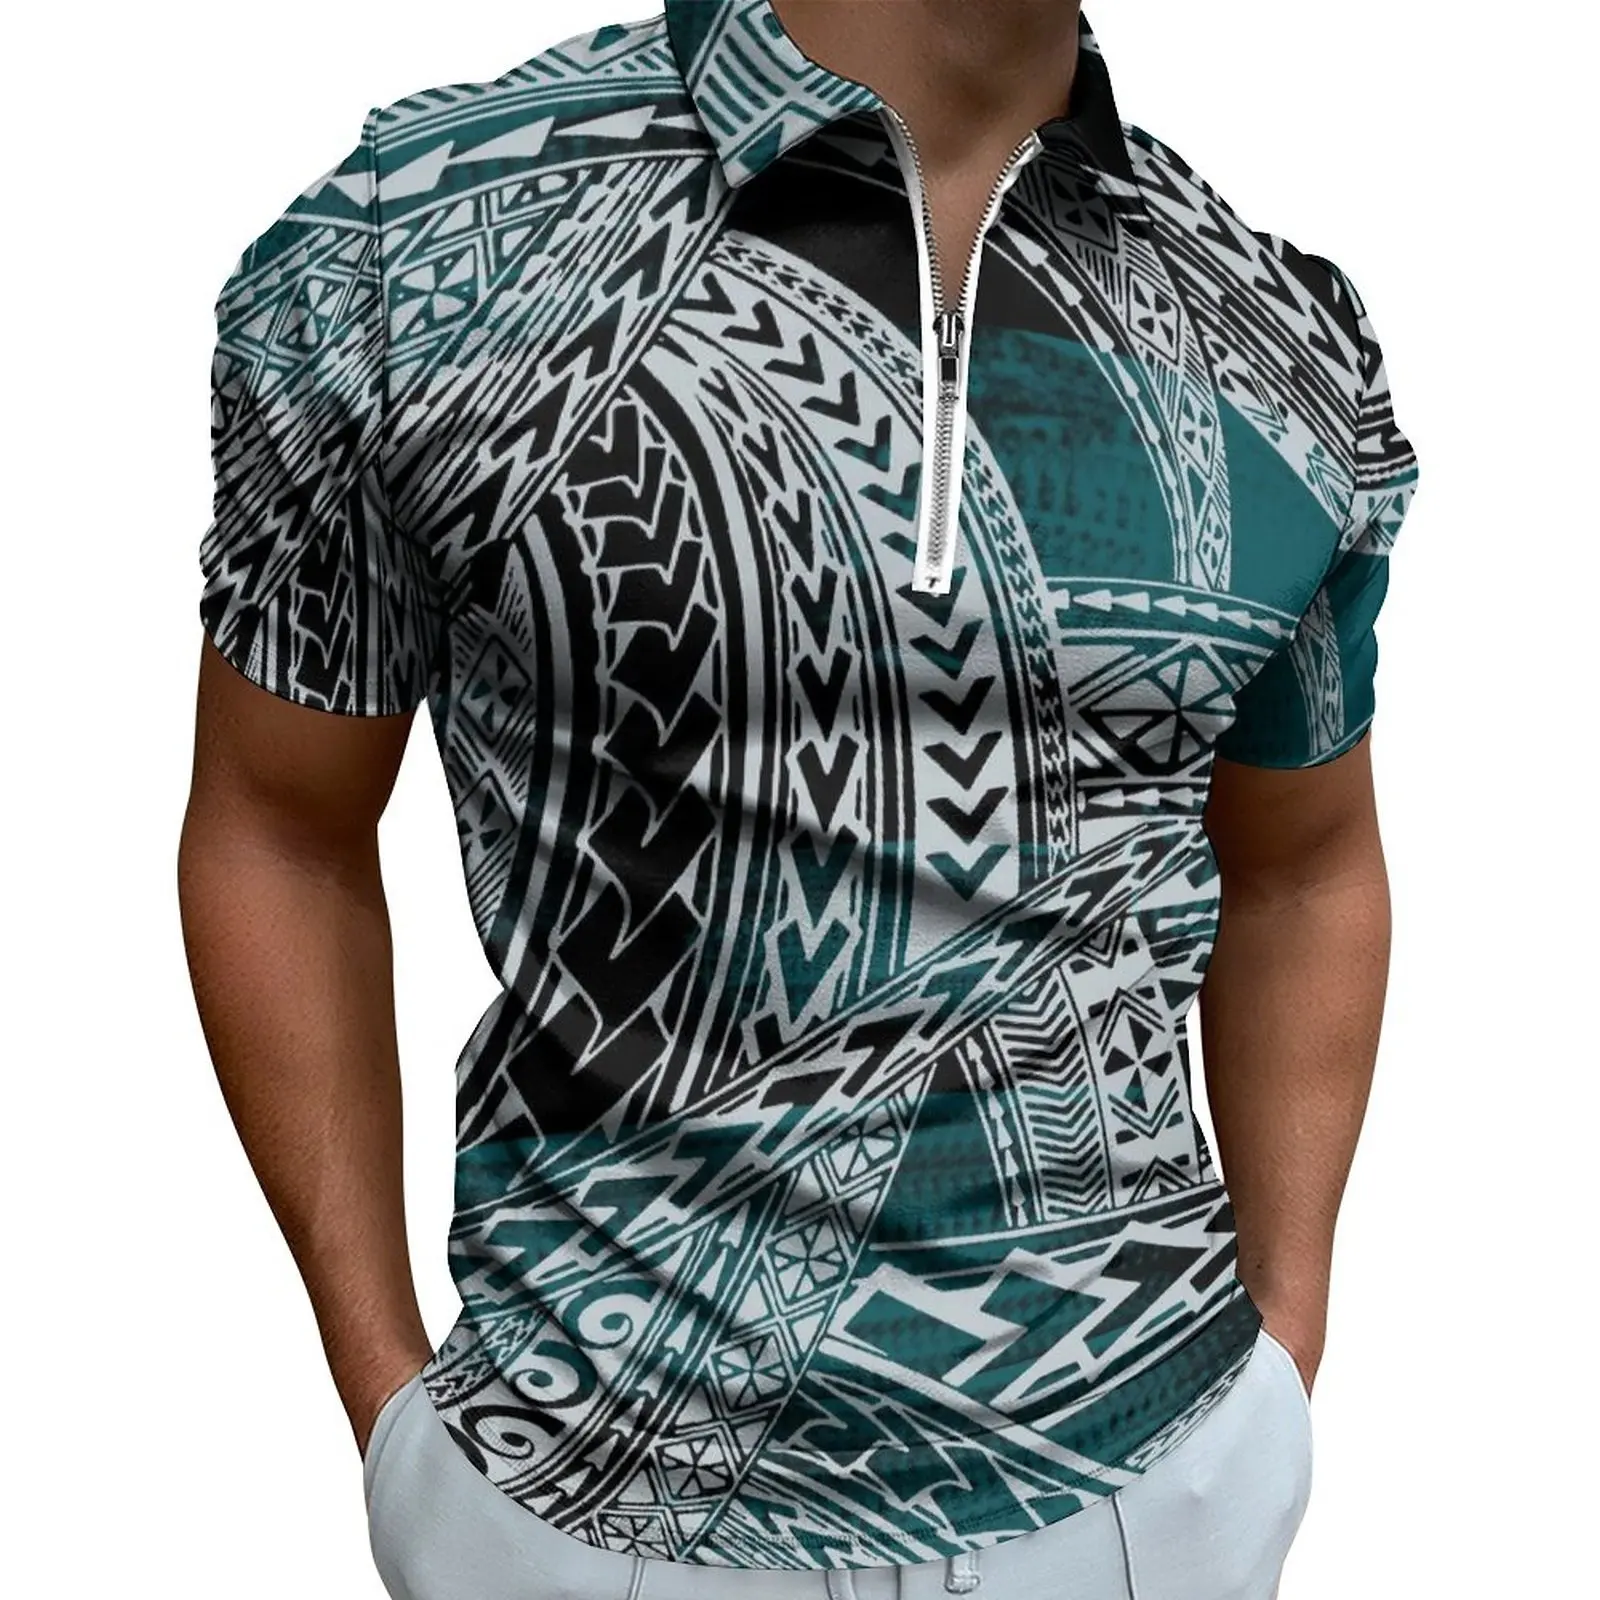 Camiseta polo masculina com zíper, camisa casual para homens com decote polo, manga curta, tamanho grande